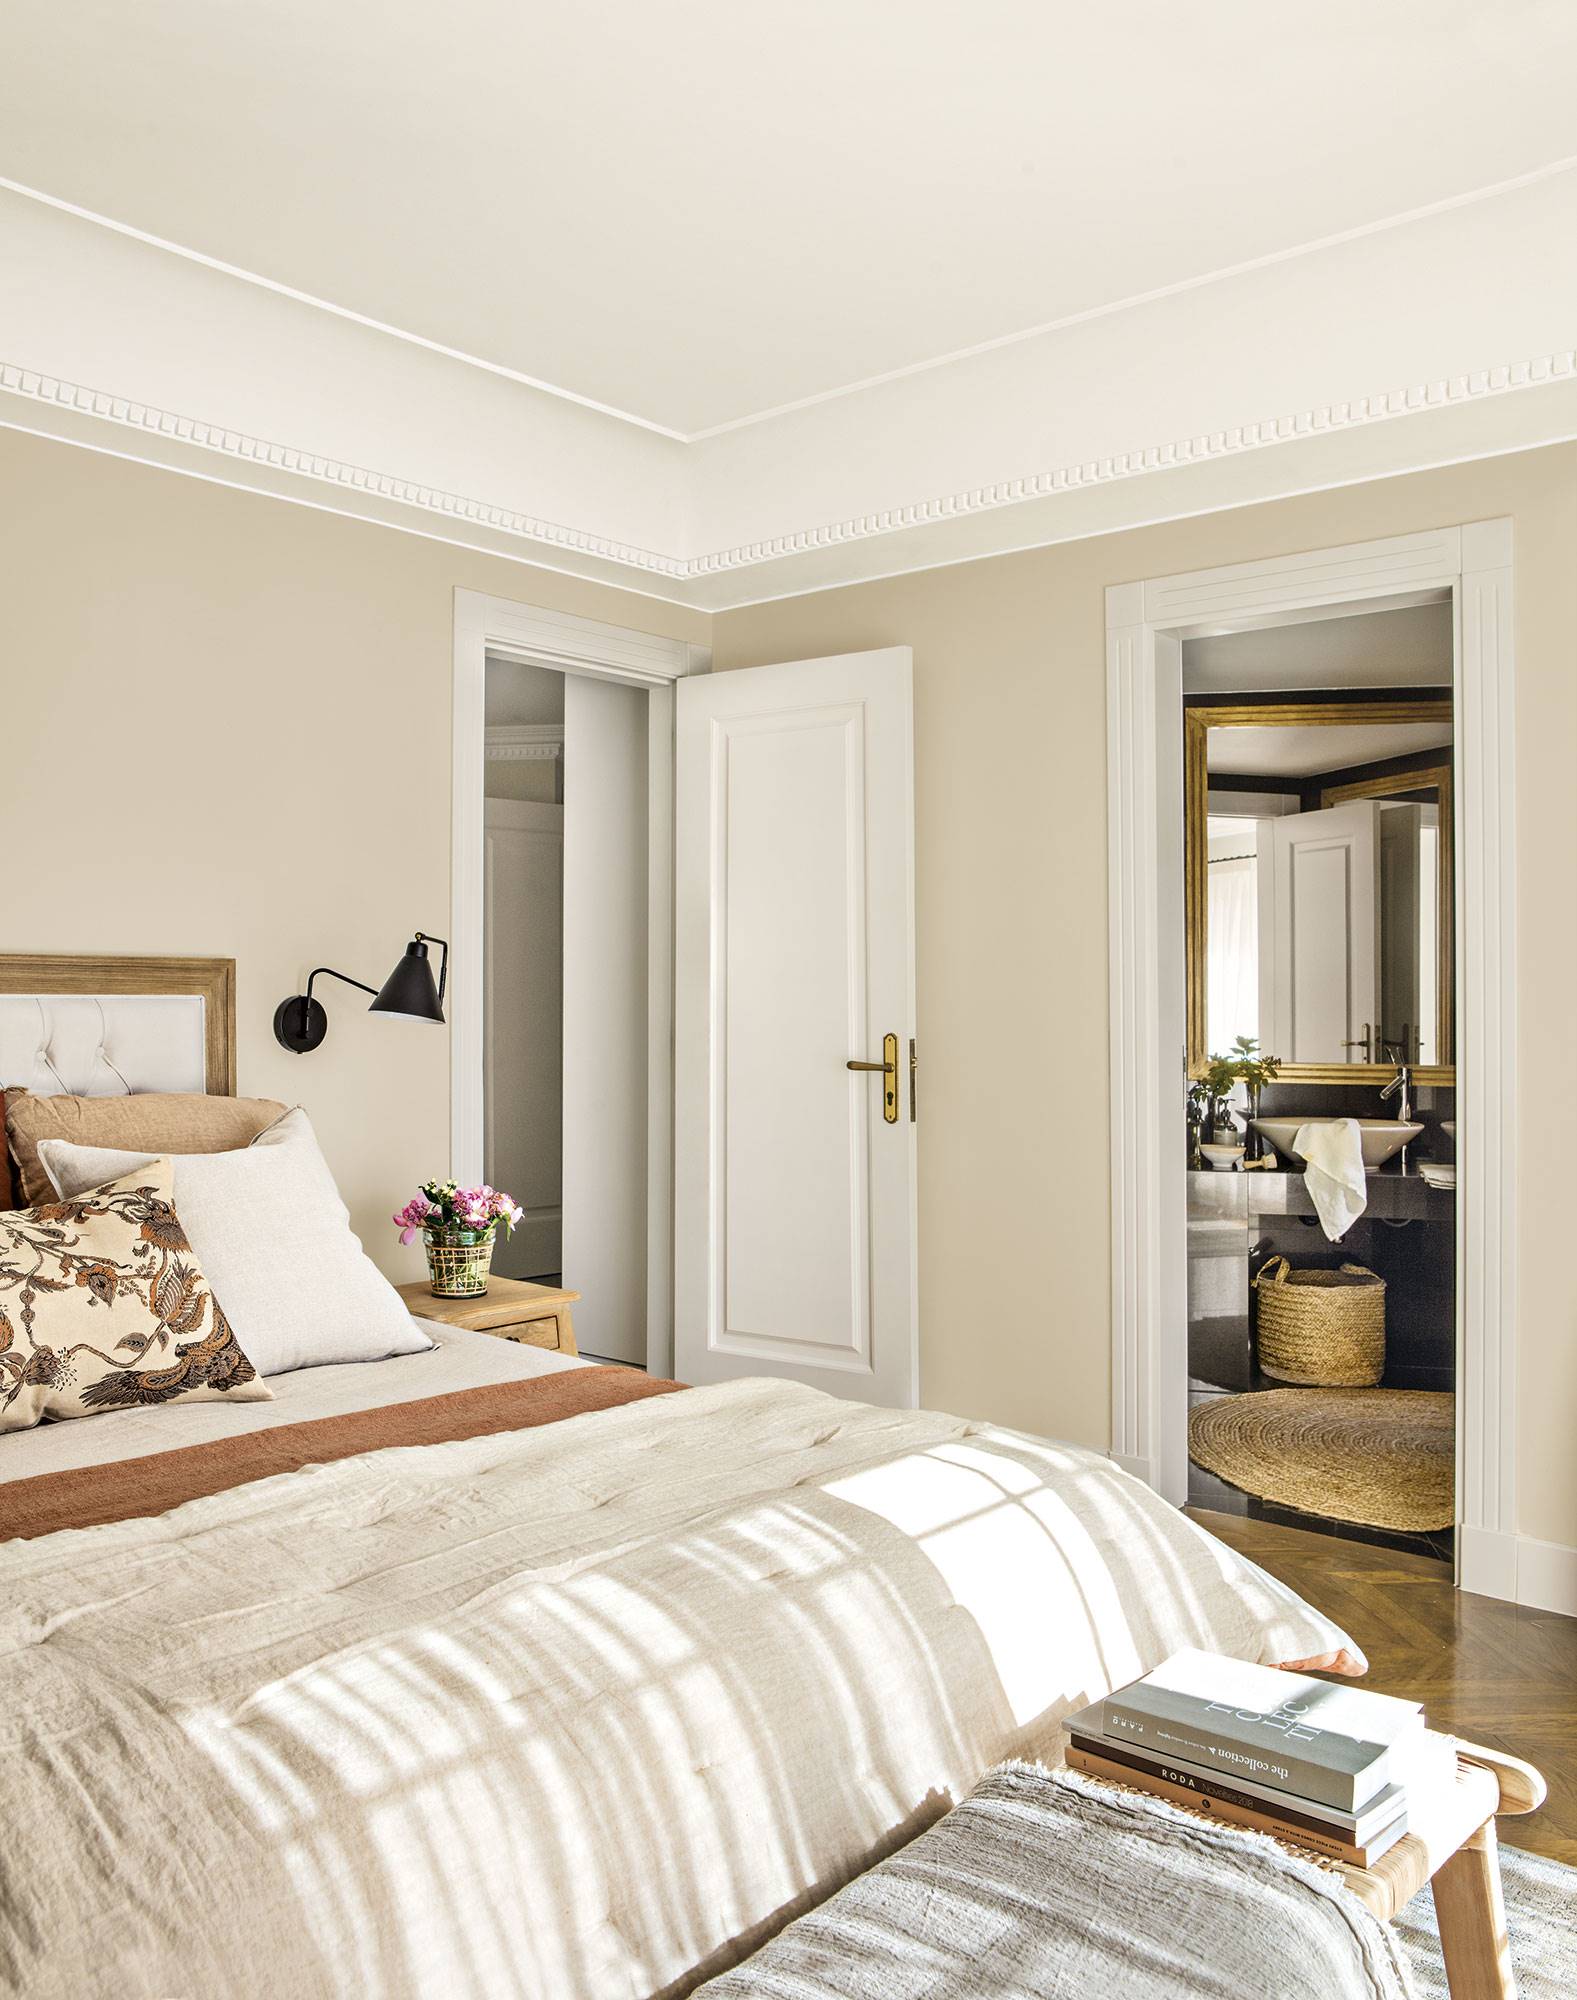 Dormitorio principal con cama decorada en tonos tierra, banqueta y baño privado.